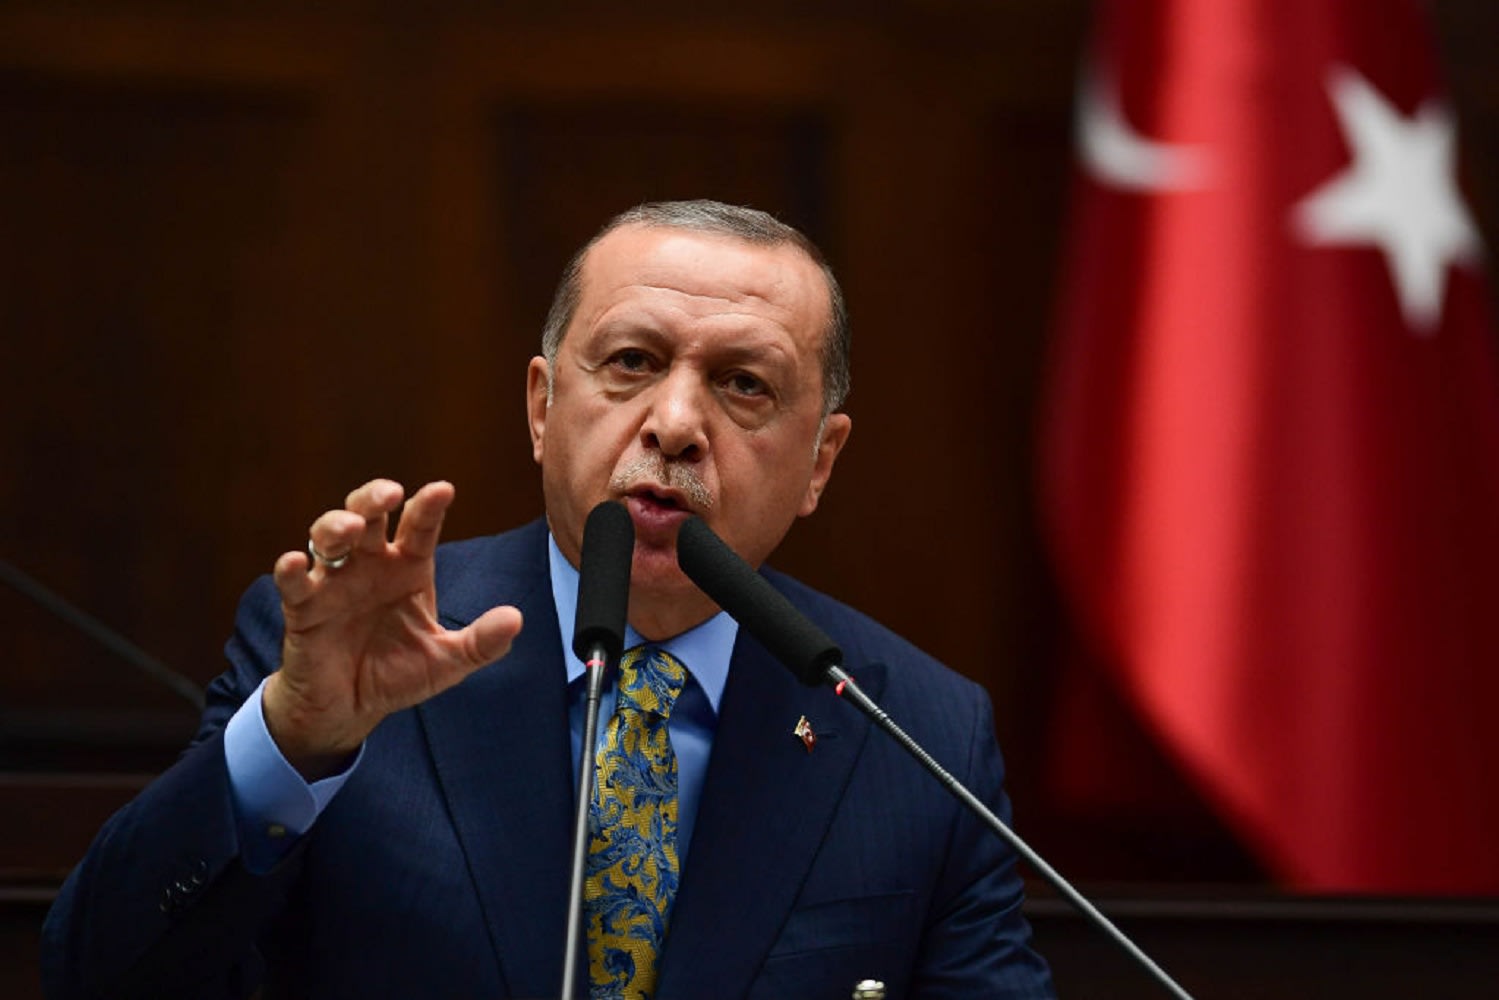 أردوغان: علينا حل جريمة قتل خاشقجي ولا داع لمماطلة هدفها إنقاذ شخص ما